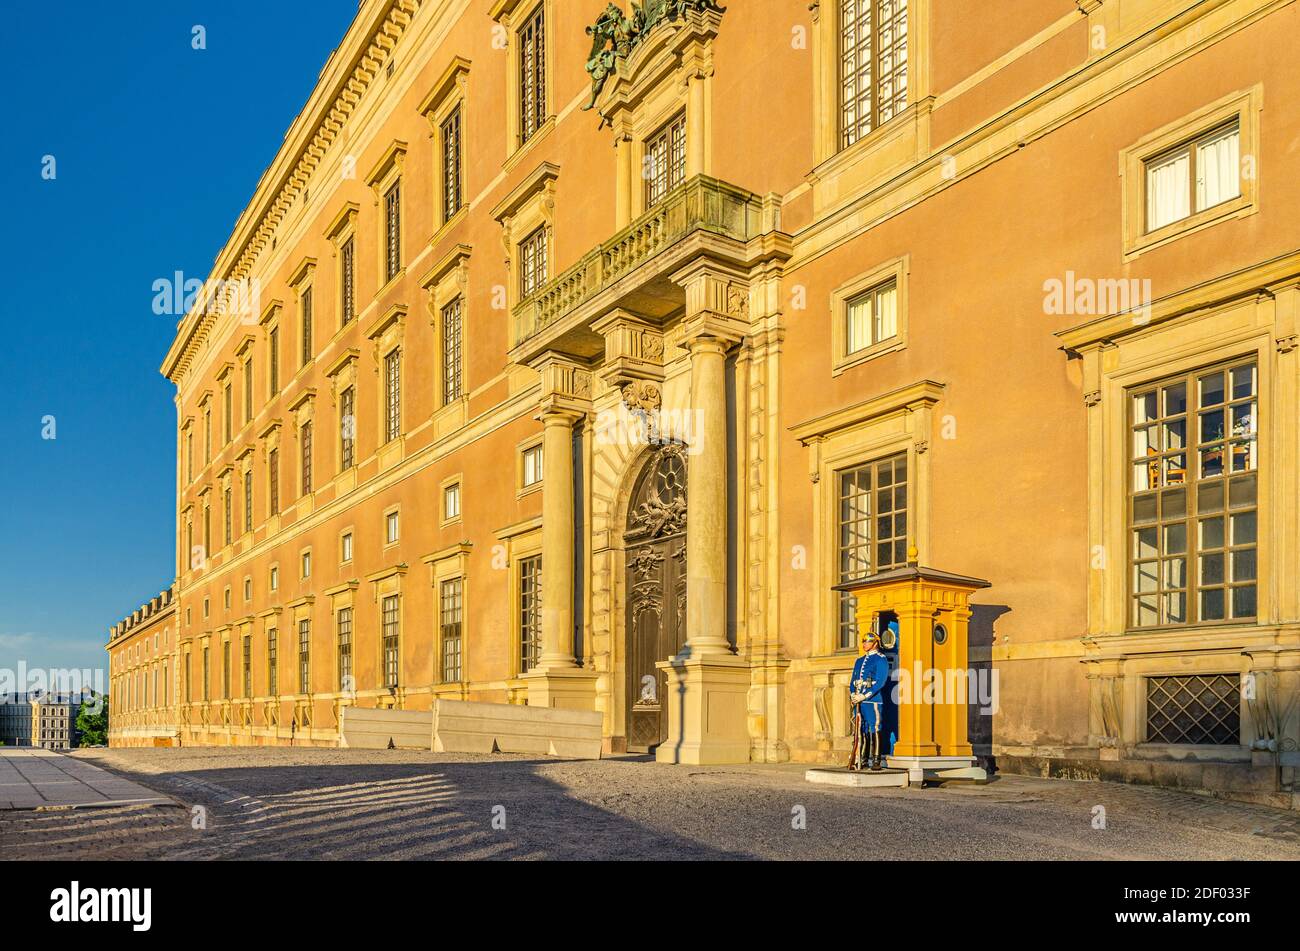 Schweden, Stockholm, 30. Mai 2018: Wachsoldat am Poststand in der Nähe des zentralen Eingangs des Königspalastes Kungliga slottet offizielle Residenz der schwedischen mona Stockfoto